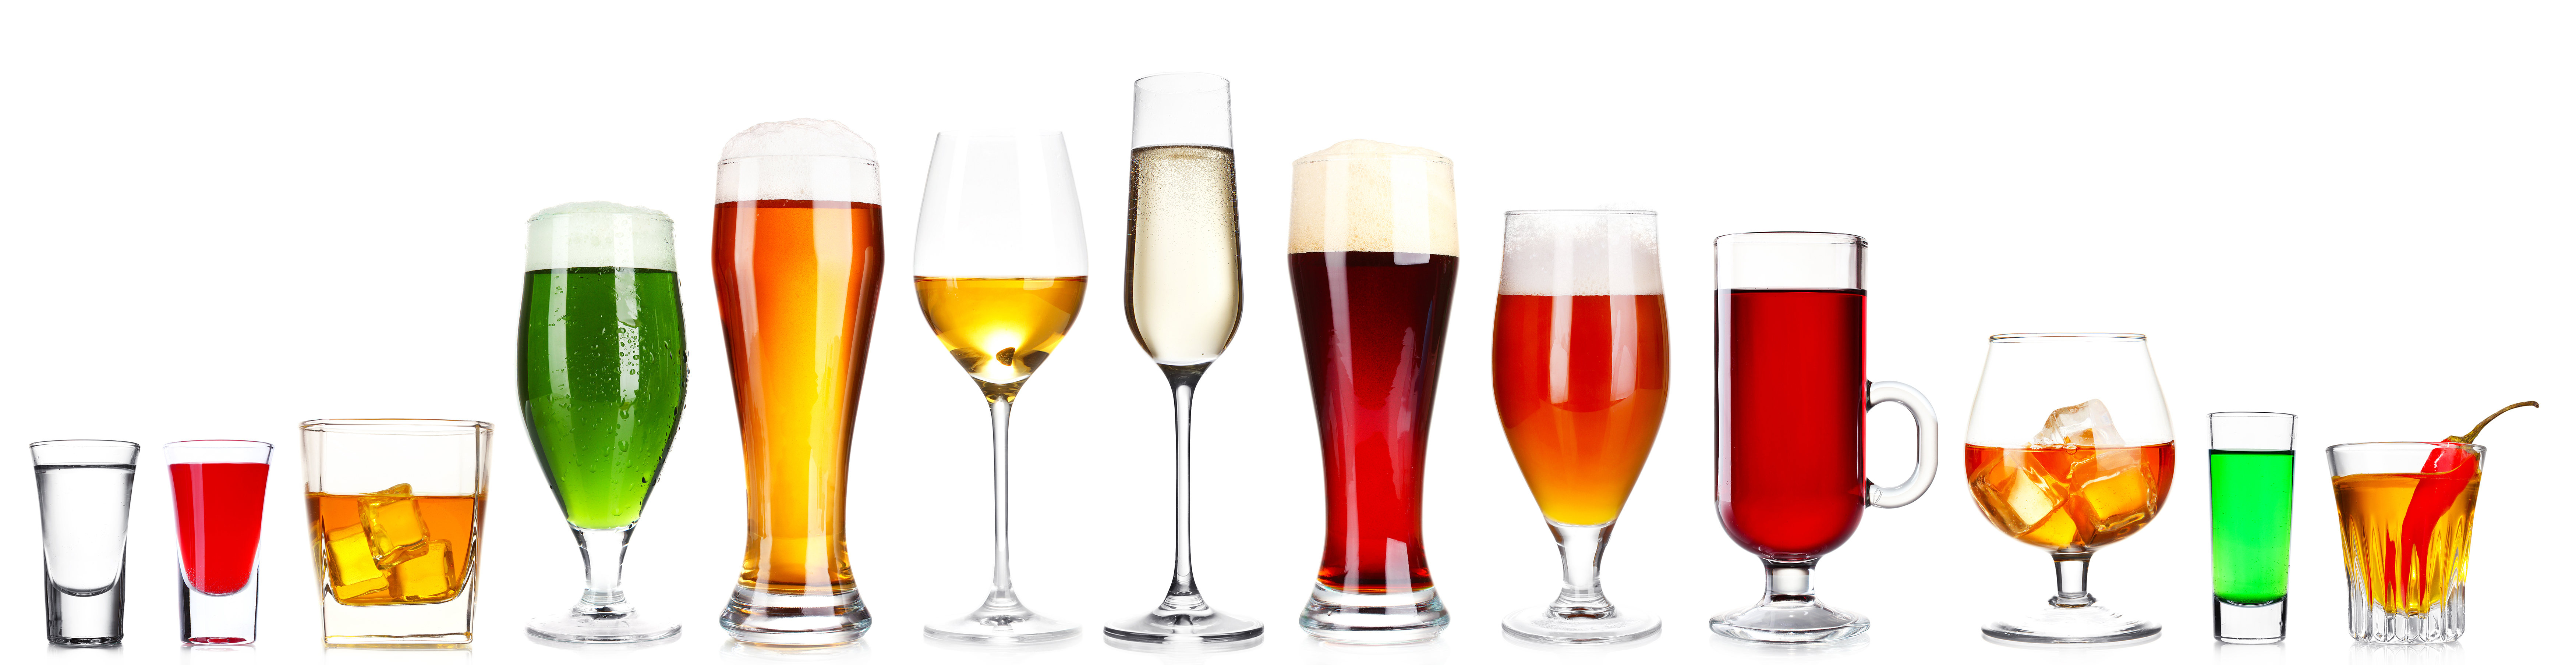 сравнение калорийности алкогольных напитков